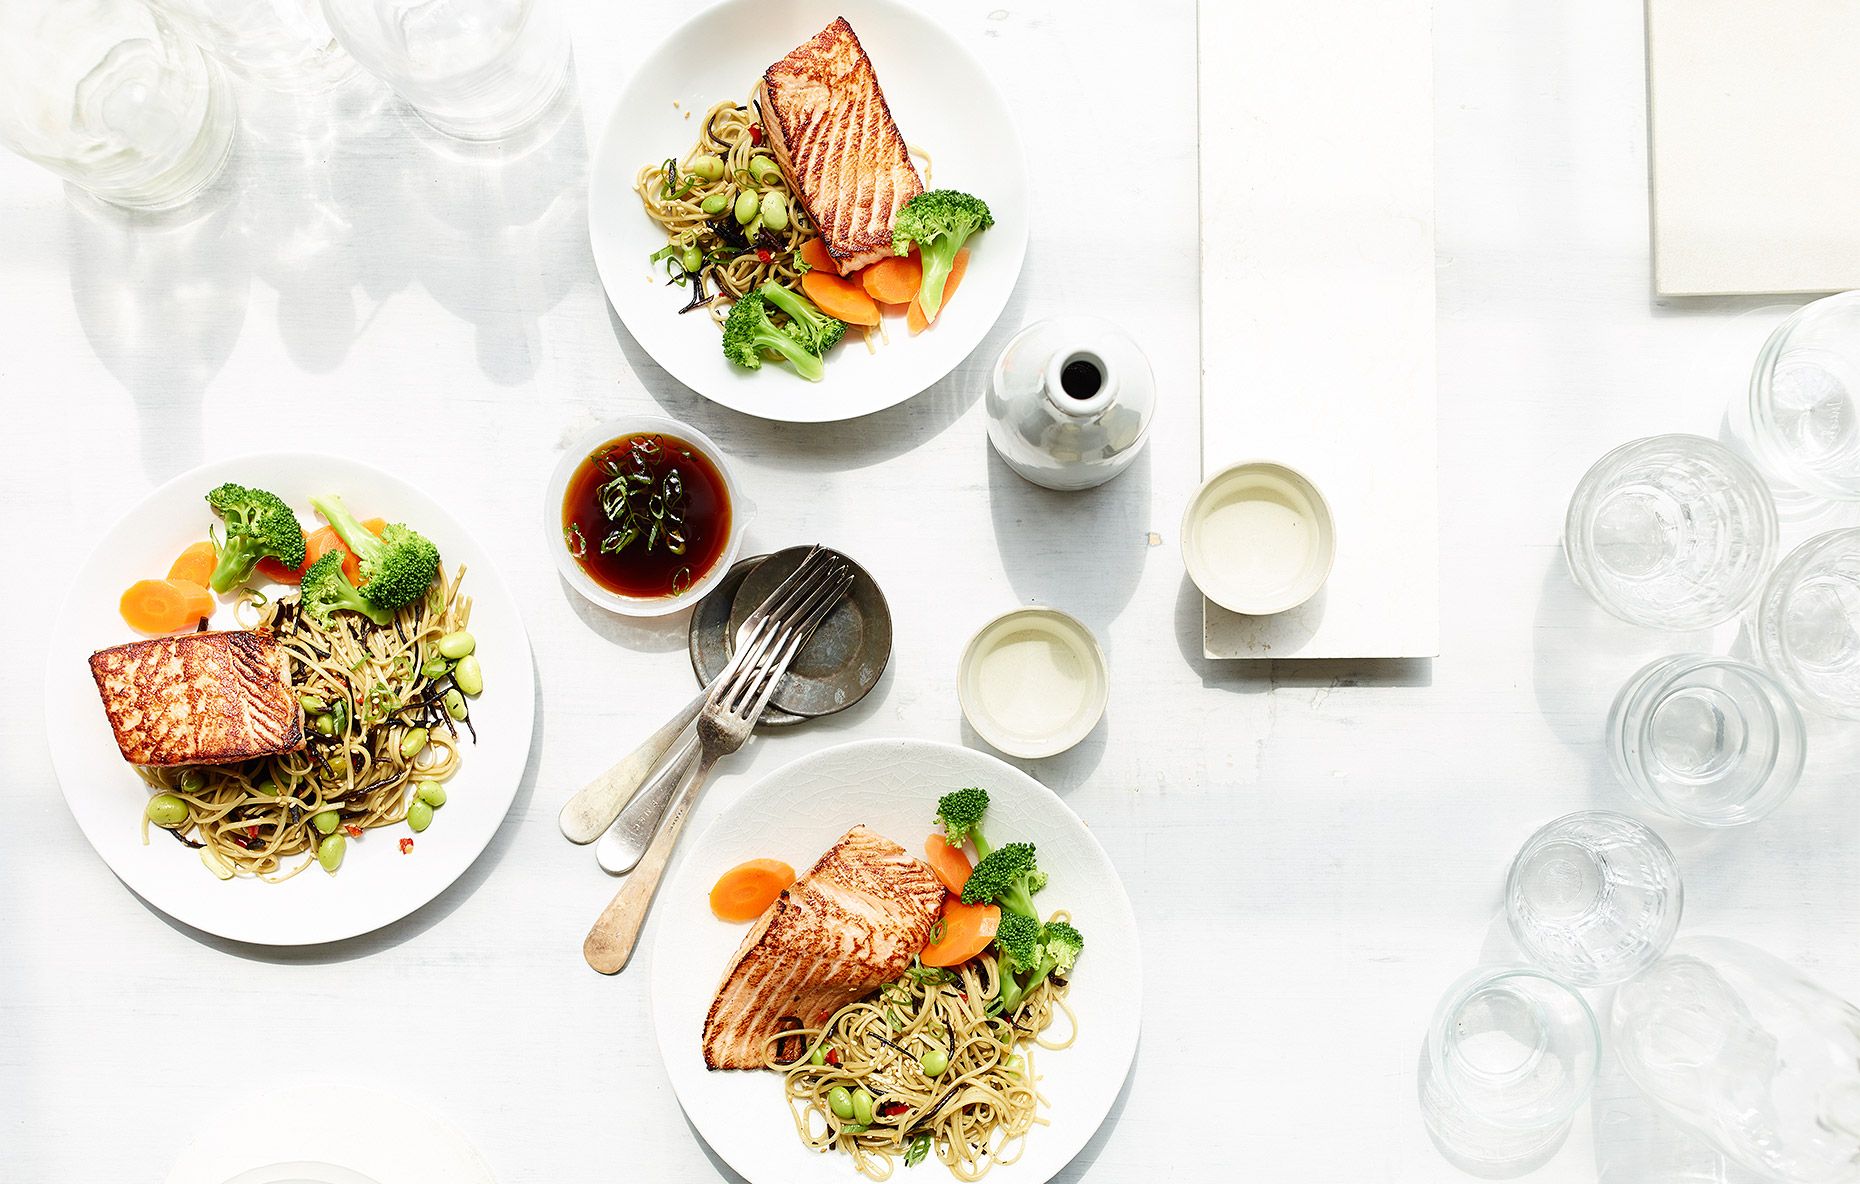 Nếu bạn đang cần tìm một nơi chụp ảnh đồ ăn đạt chuẩn, Tròn House là lựa chọn hoàn hảo cho bạn. Không gian sáng tạo, tươi mới và đầy màu sắc này sẽ giúp bạn có những bức ảnh chụp đồ ăn đẹp như mơ.